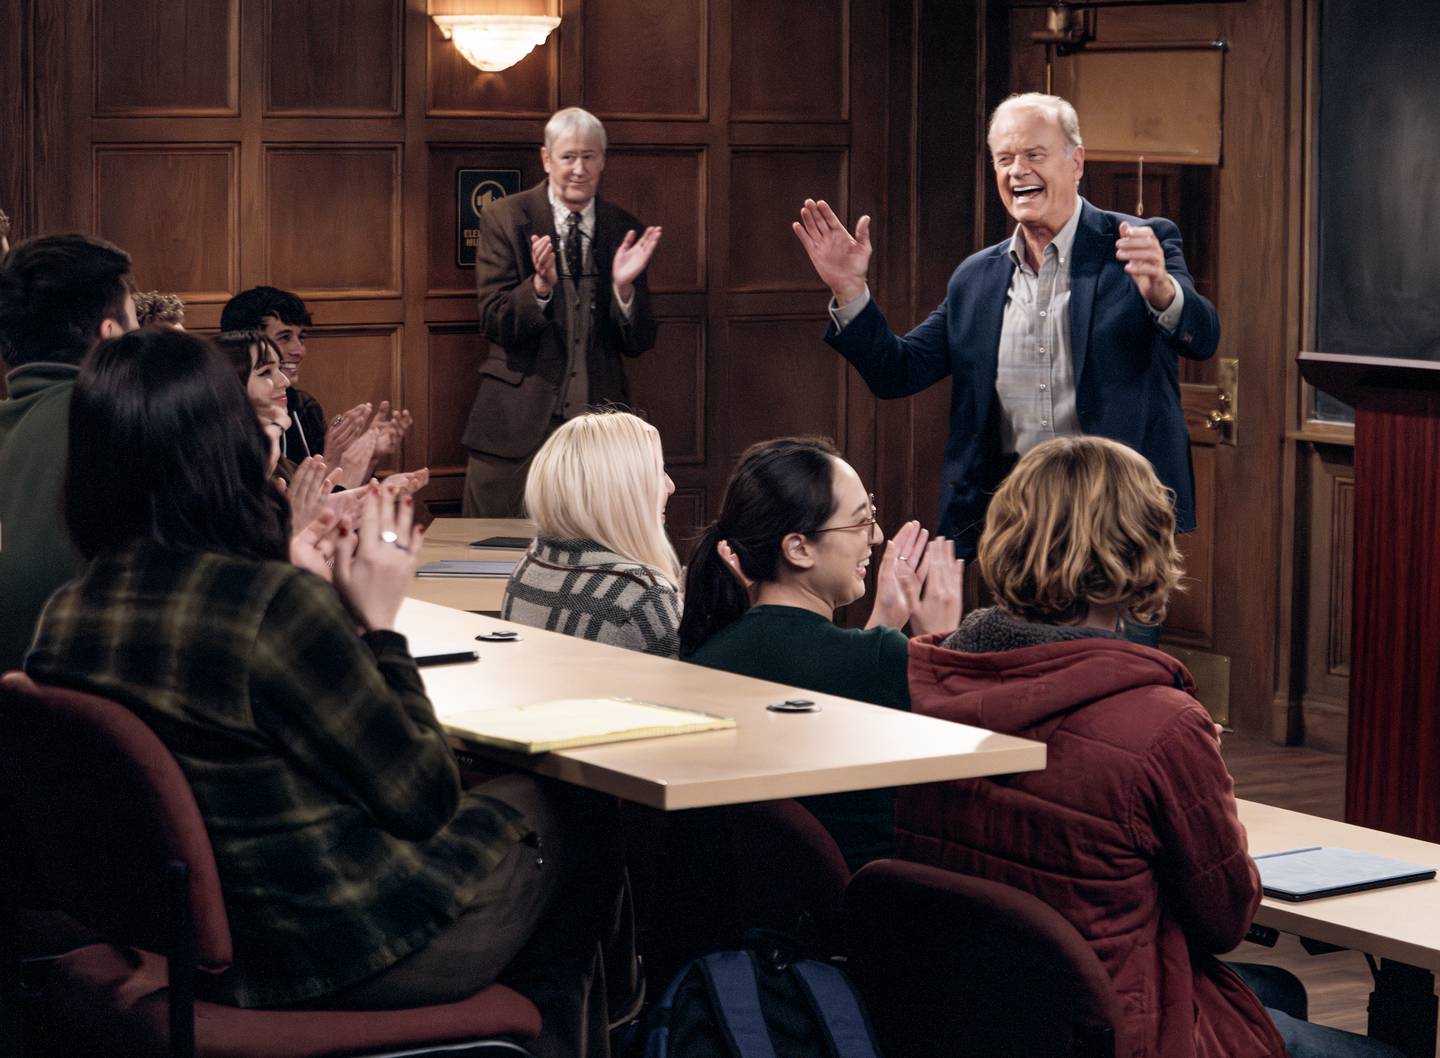 Frasier Crane får jobb på Harvard, der studentene er mest opptatt av TV-kjendisstatusen hans. I bakgrunnen er Alan (Nicholas Lyndhurst) ny kollega. gammel ven og fast sidekick i «Frasier».